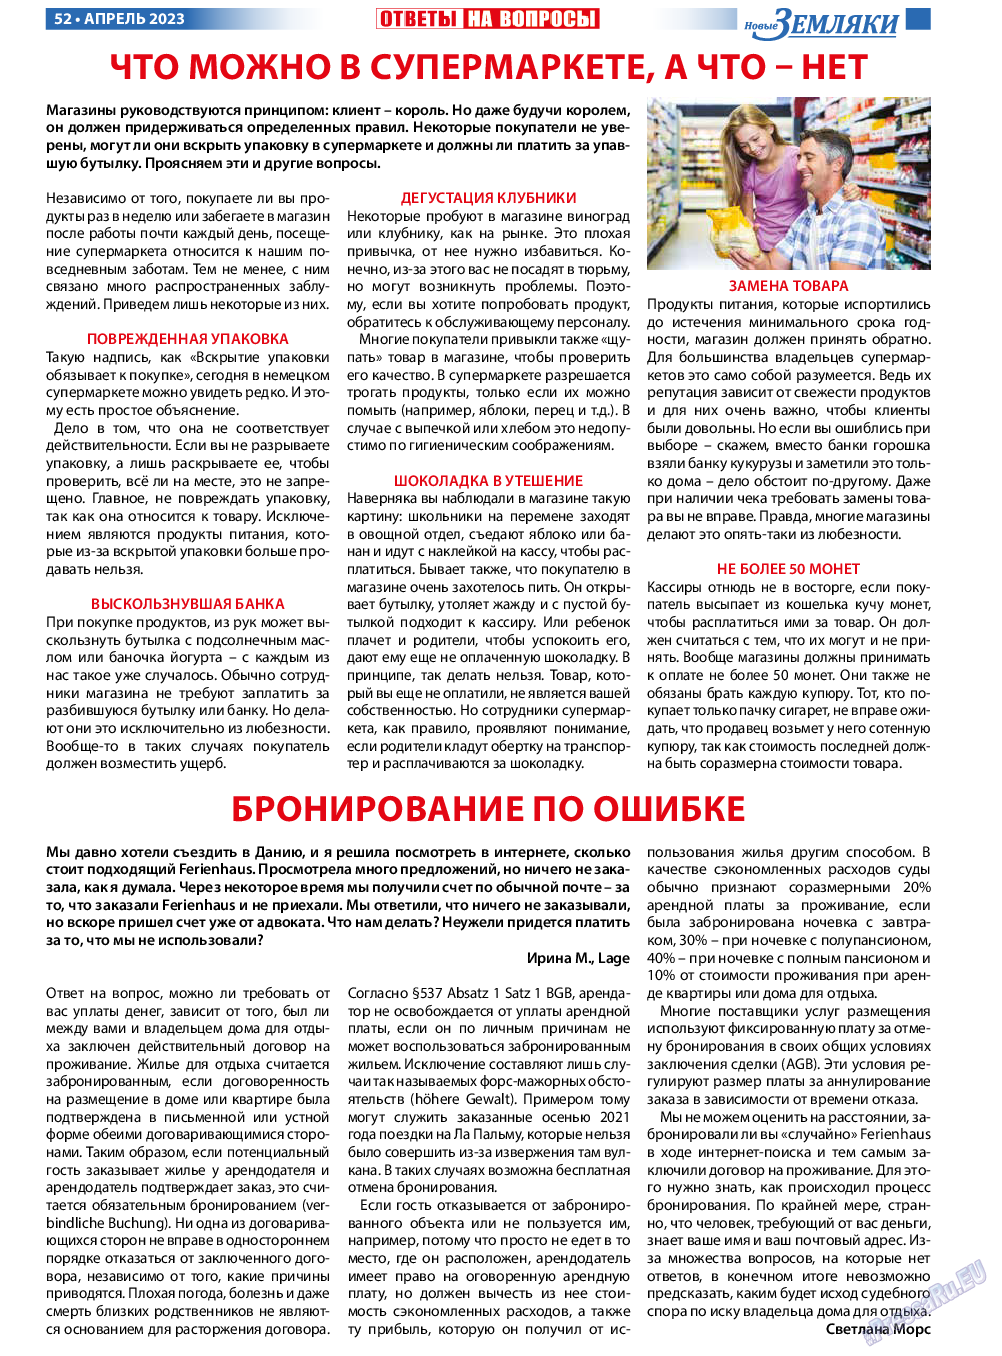 Новые Земляки (газета). 2023 год, номер 4, стр. 52